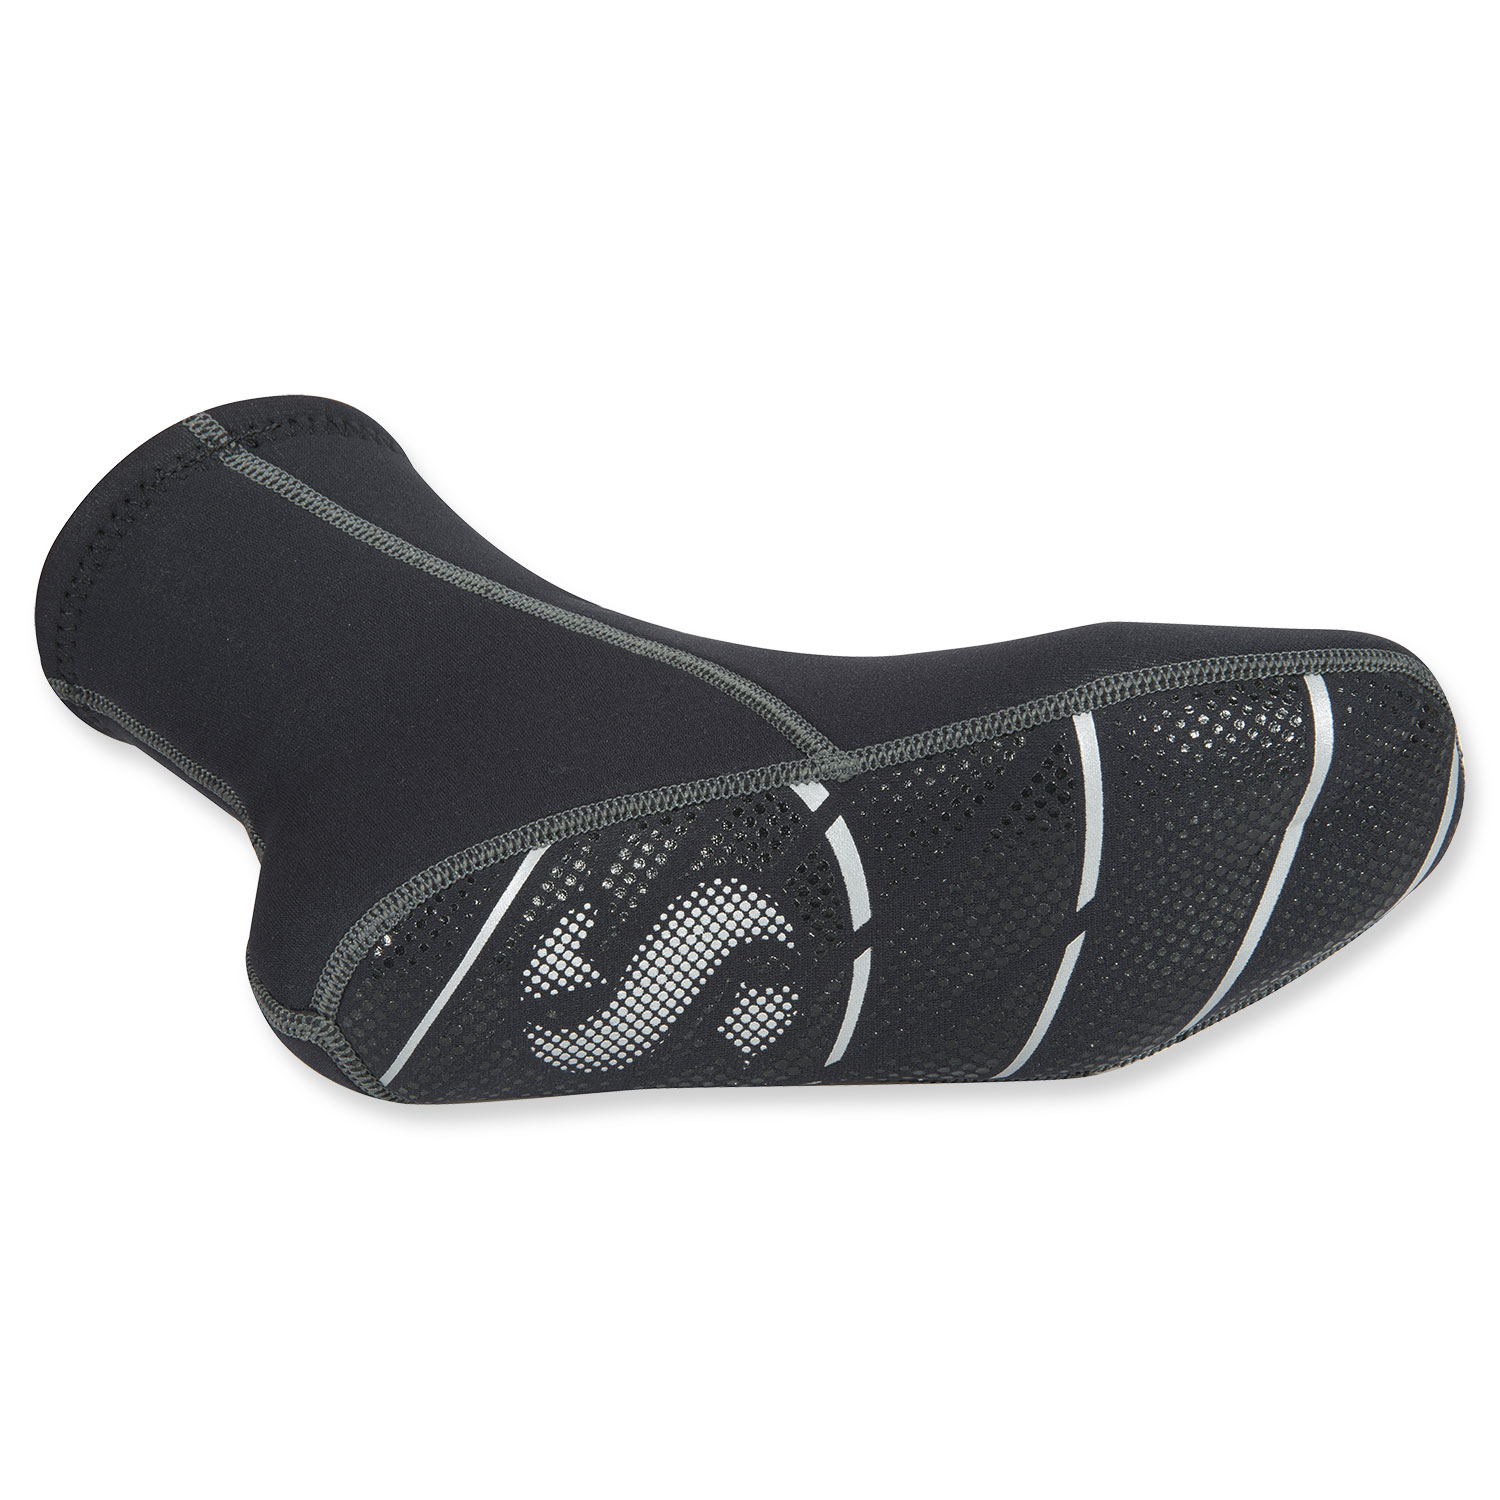 Scubapro Comfort Soxx Neoprensocken Gr 36 bis 48 Neopren Socken 